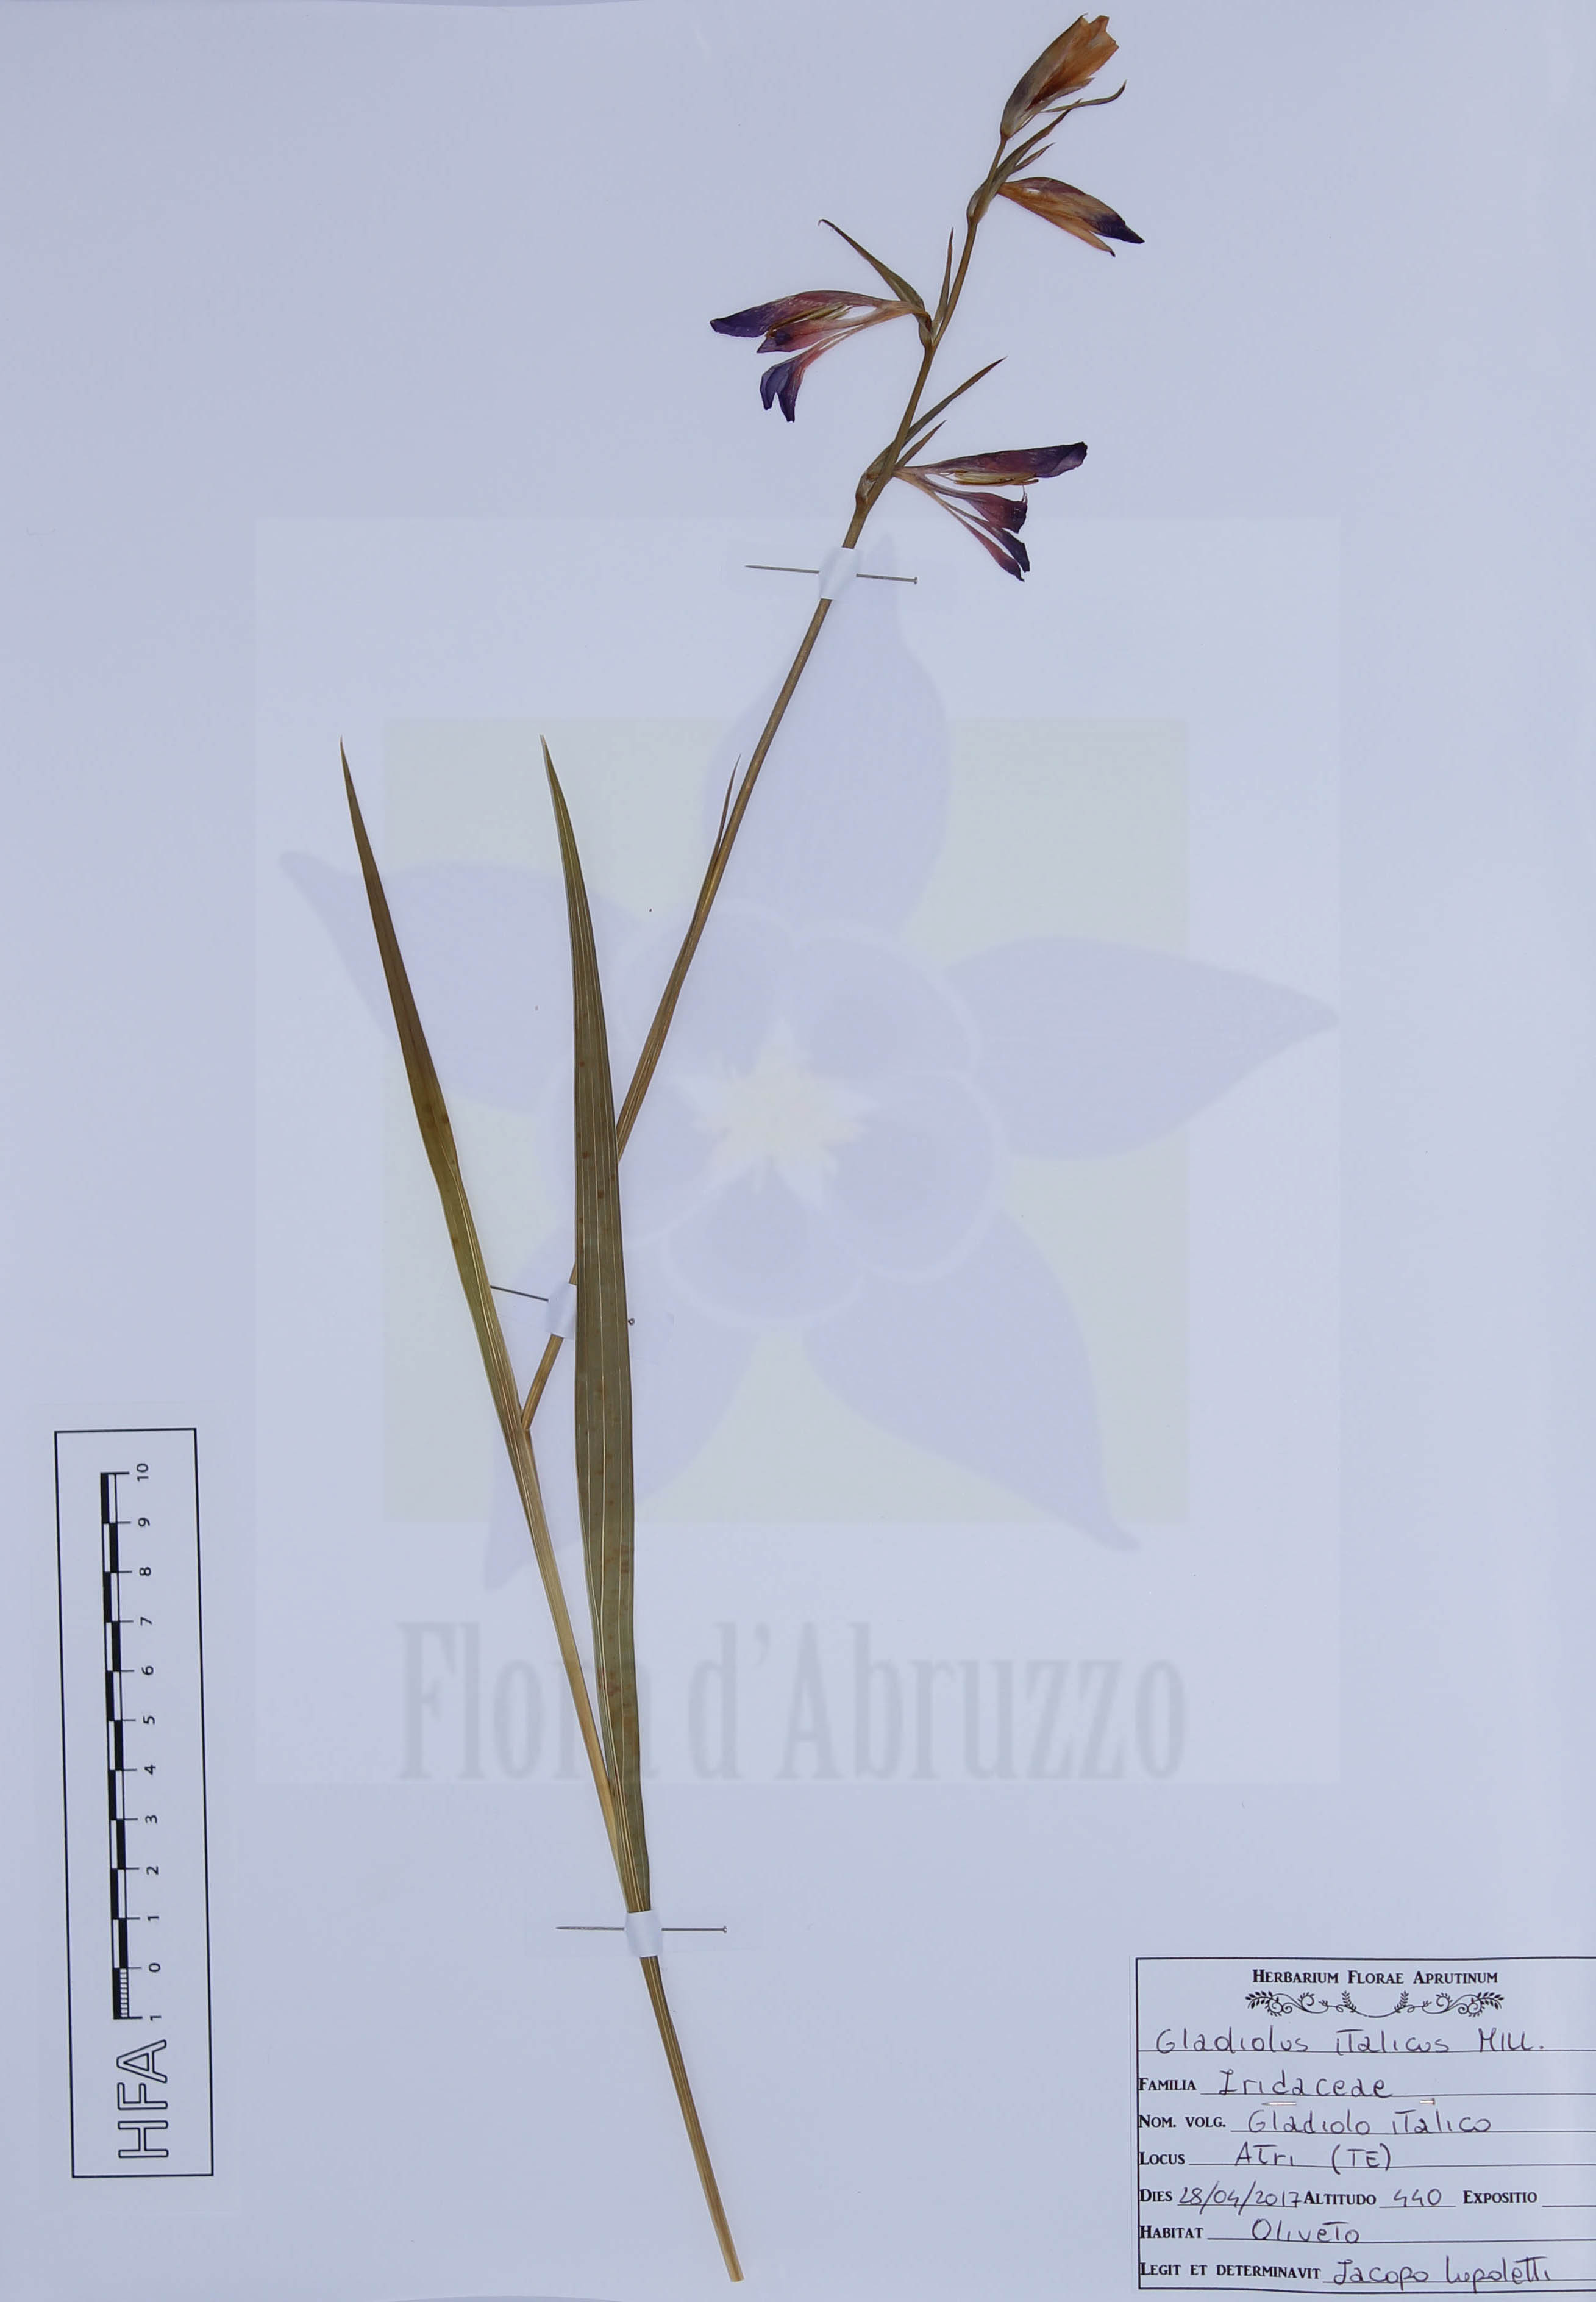 Gladiolus italicus Mill.